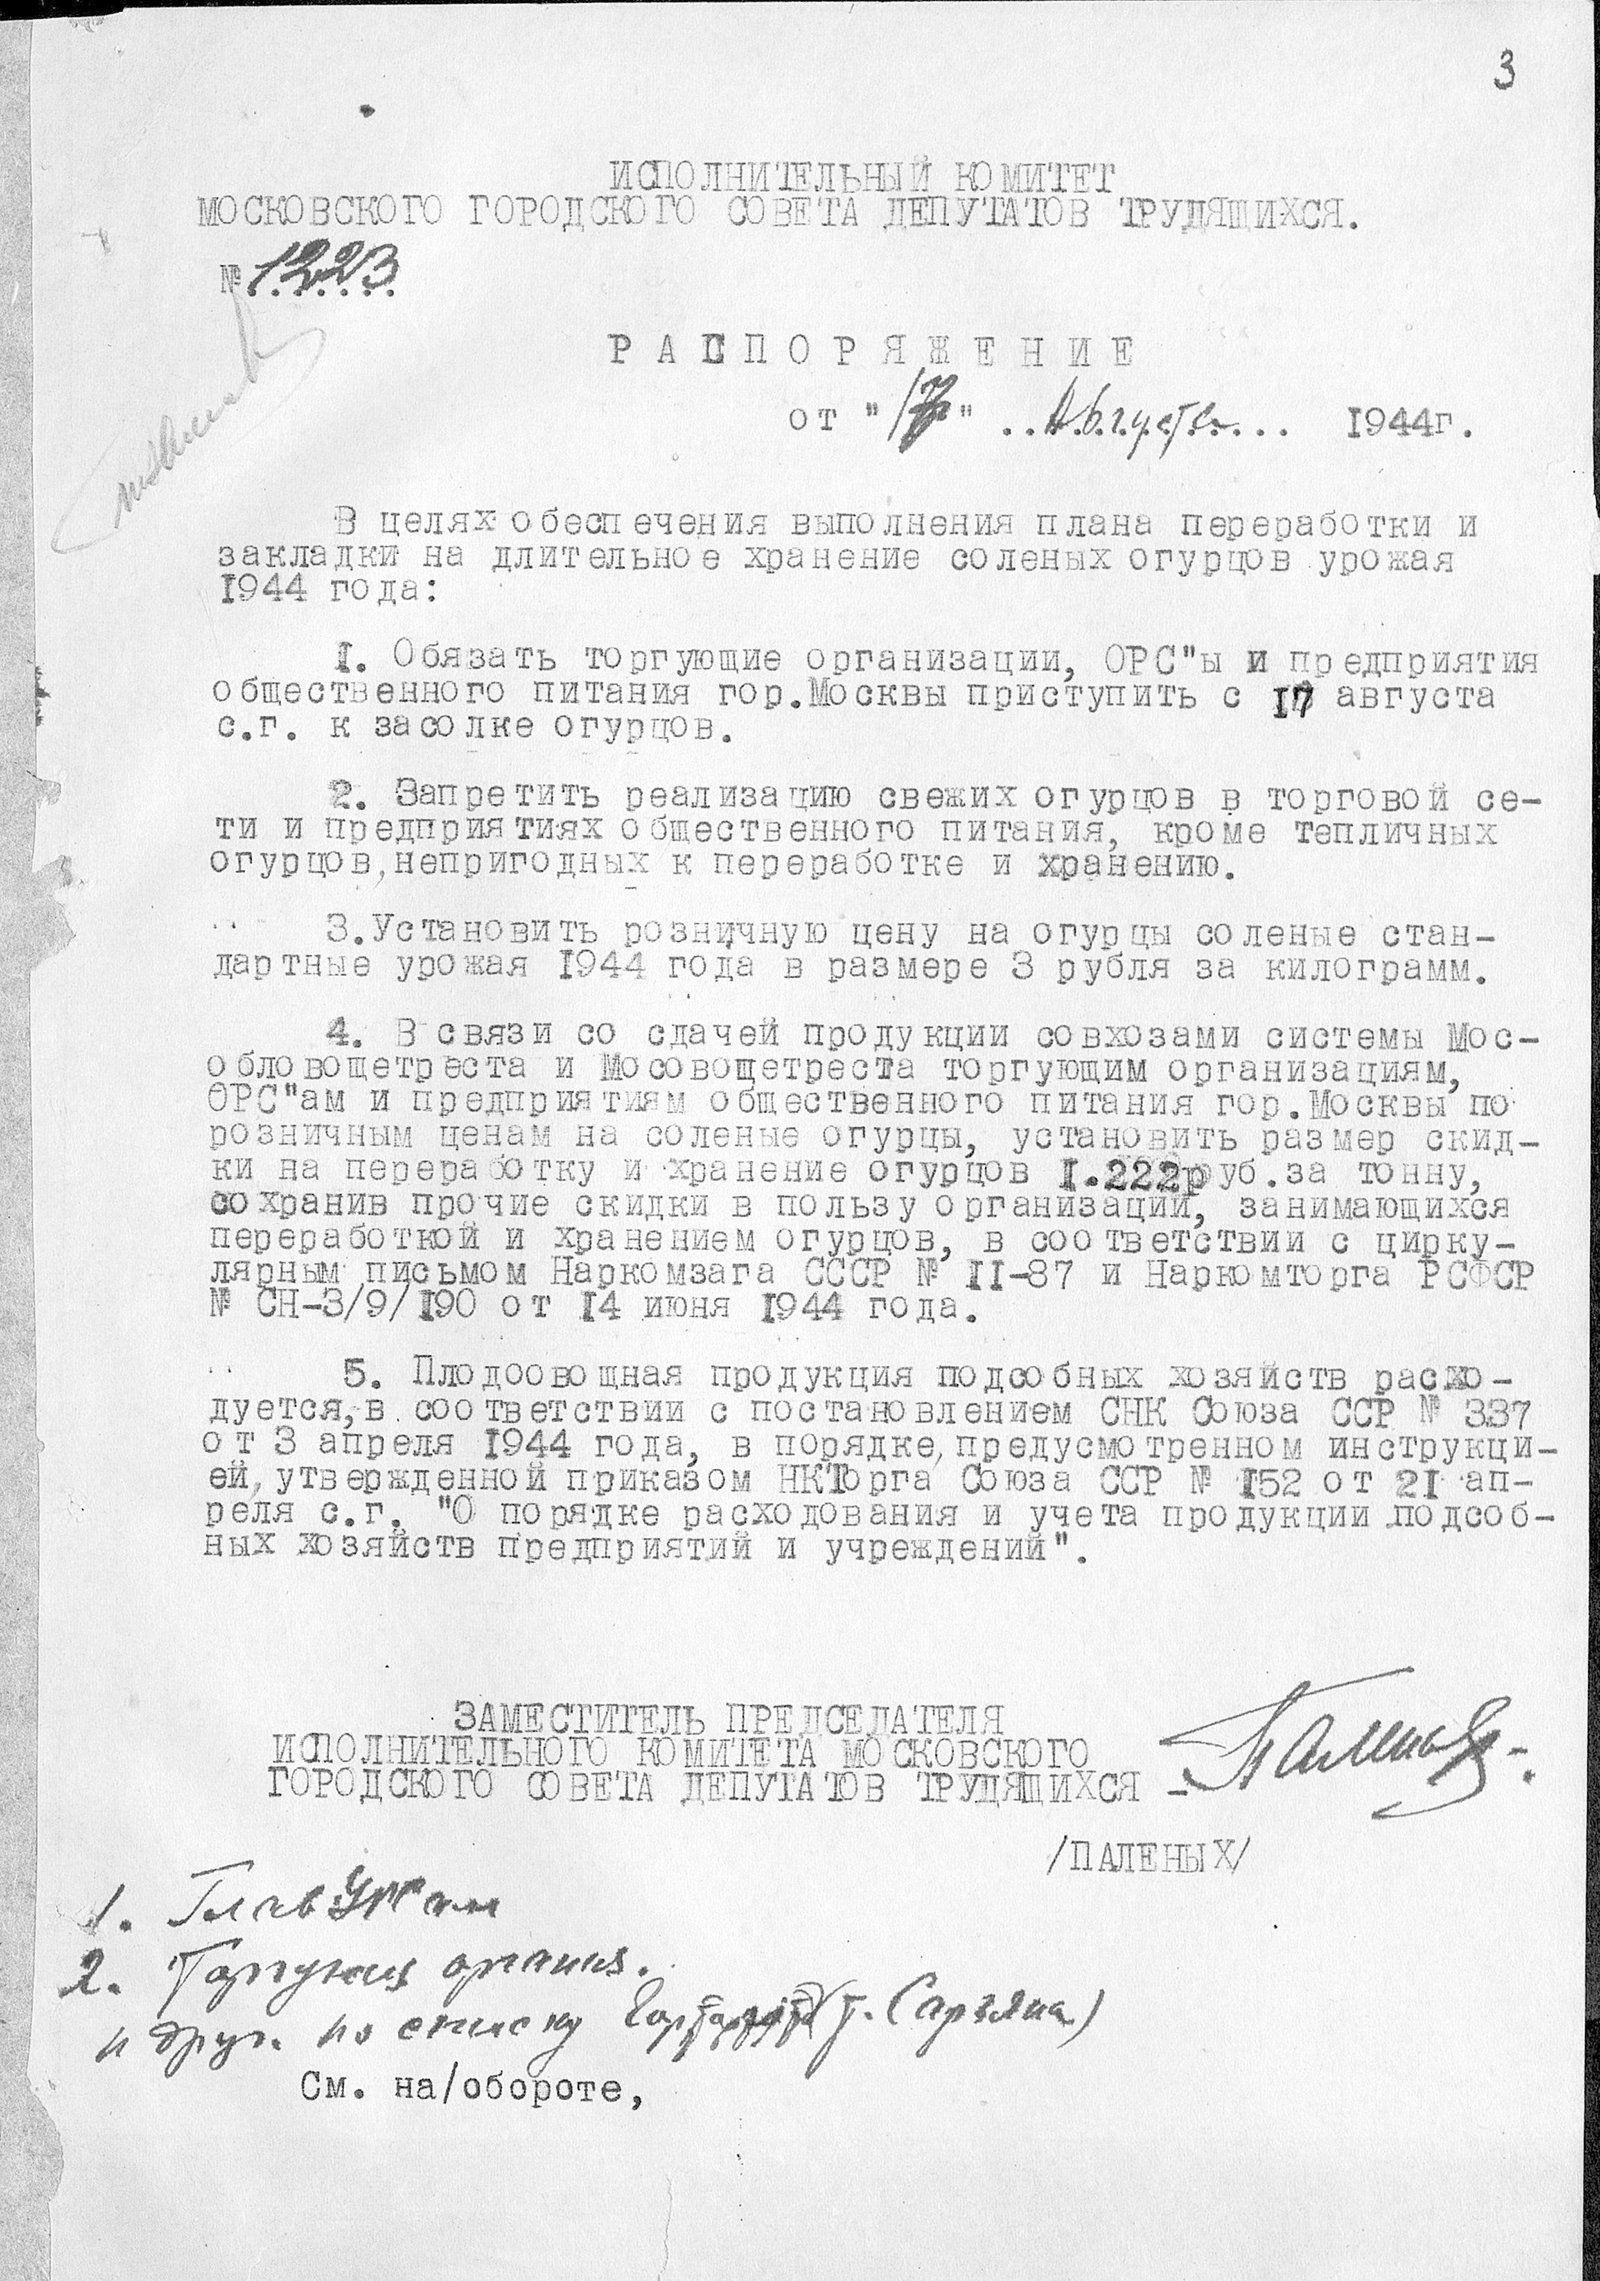 Распоряжение о выполнении плана переработки и закладки на длительное хранение соленых огурцов. 17 августа 1944 года. Главархив Москвы